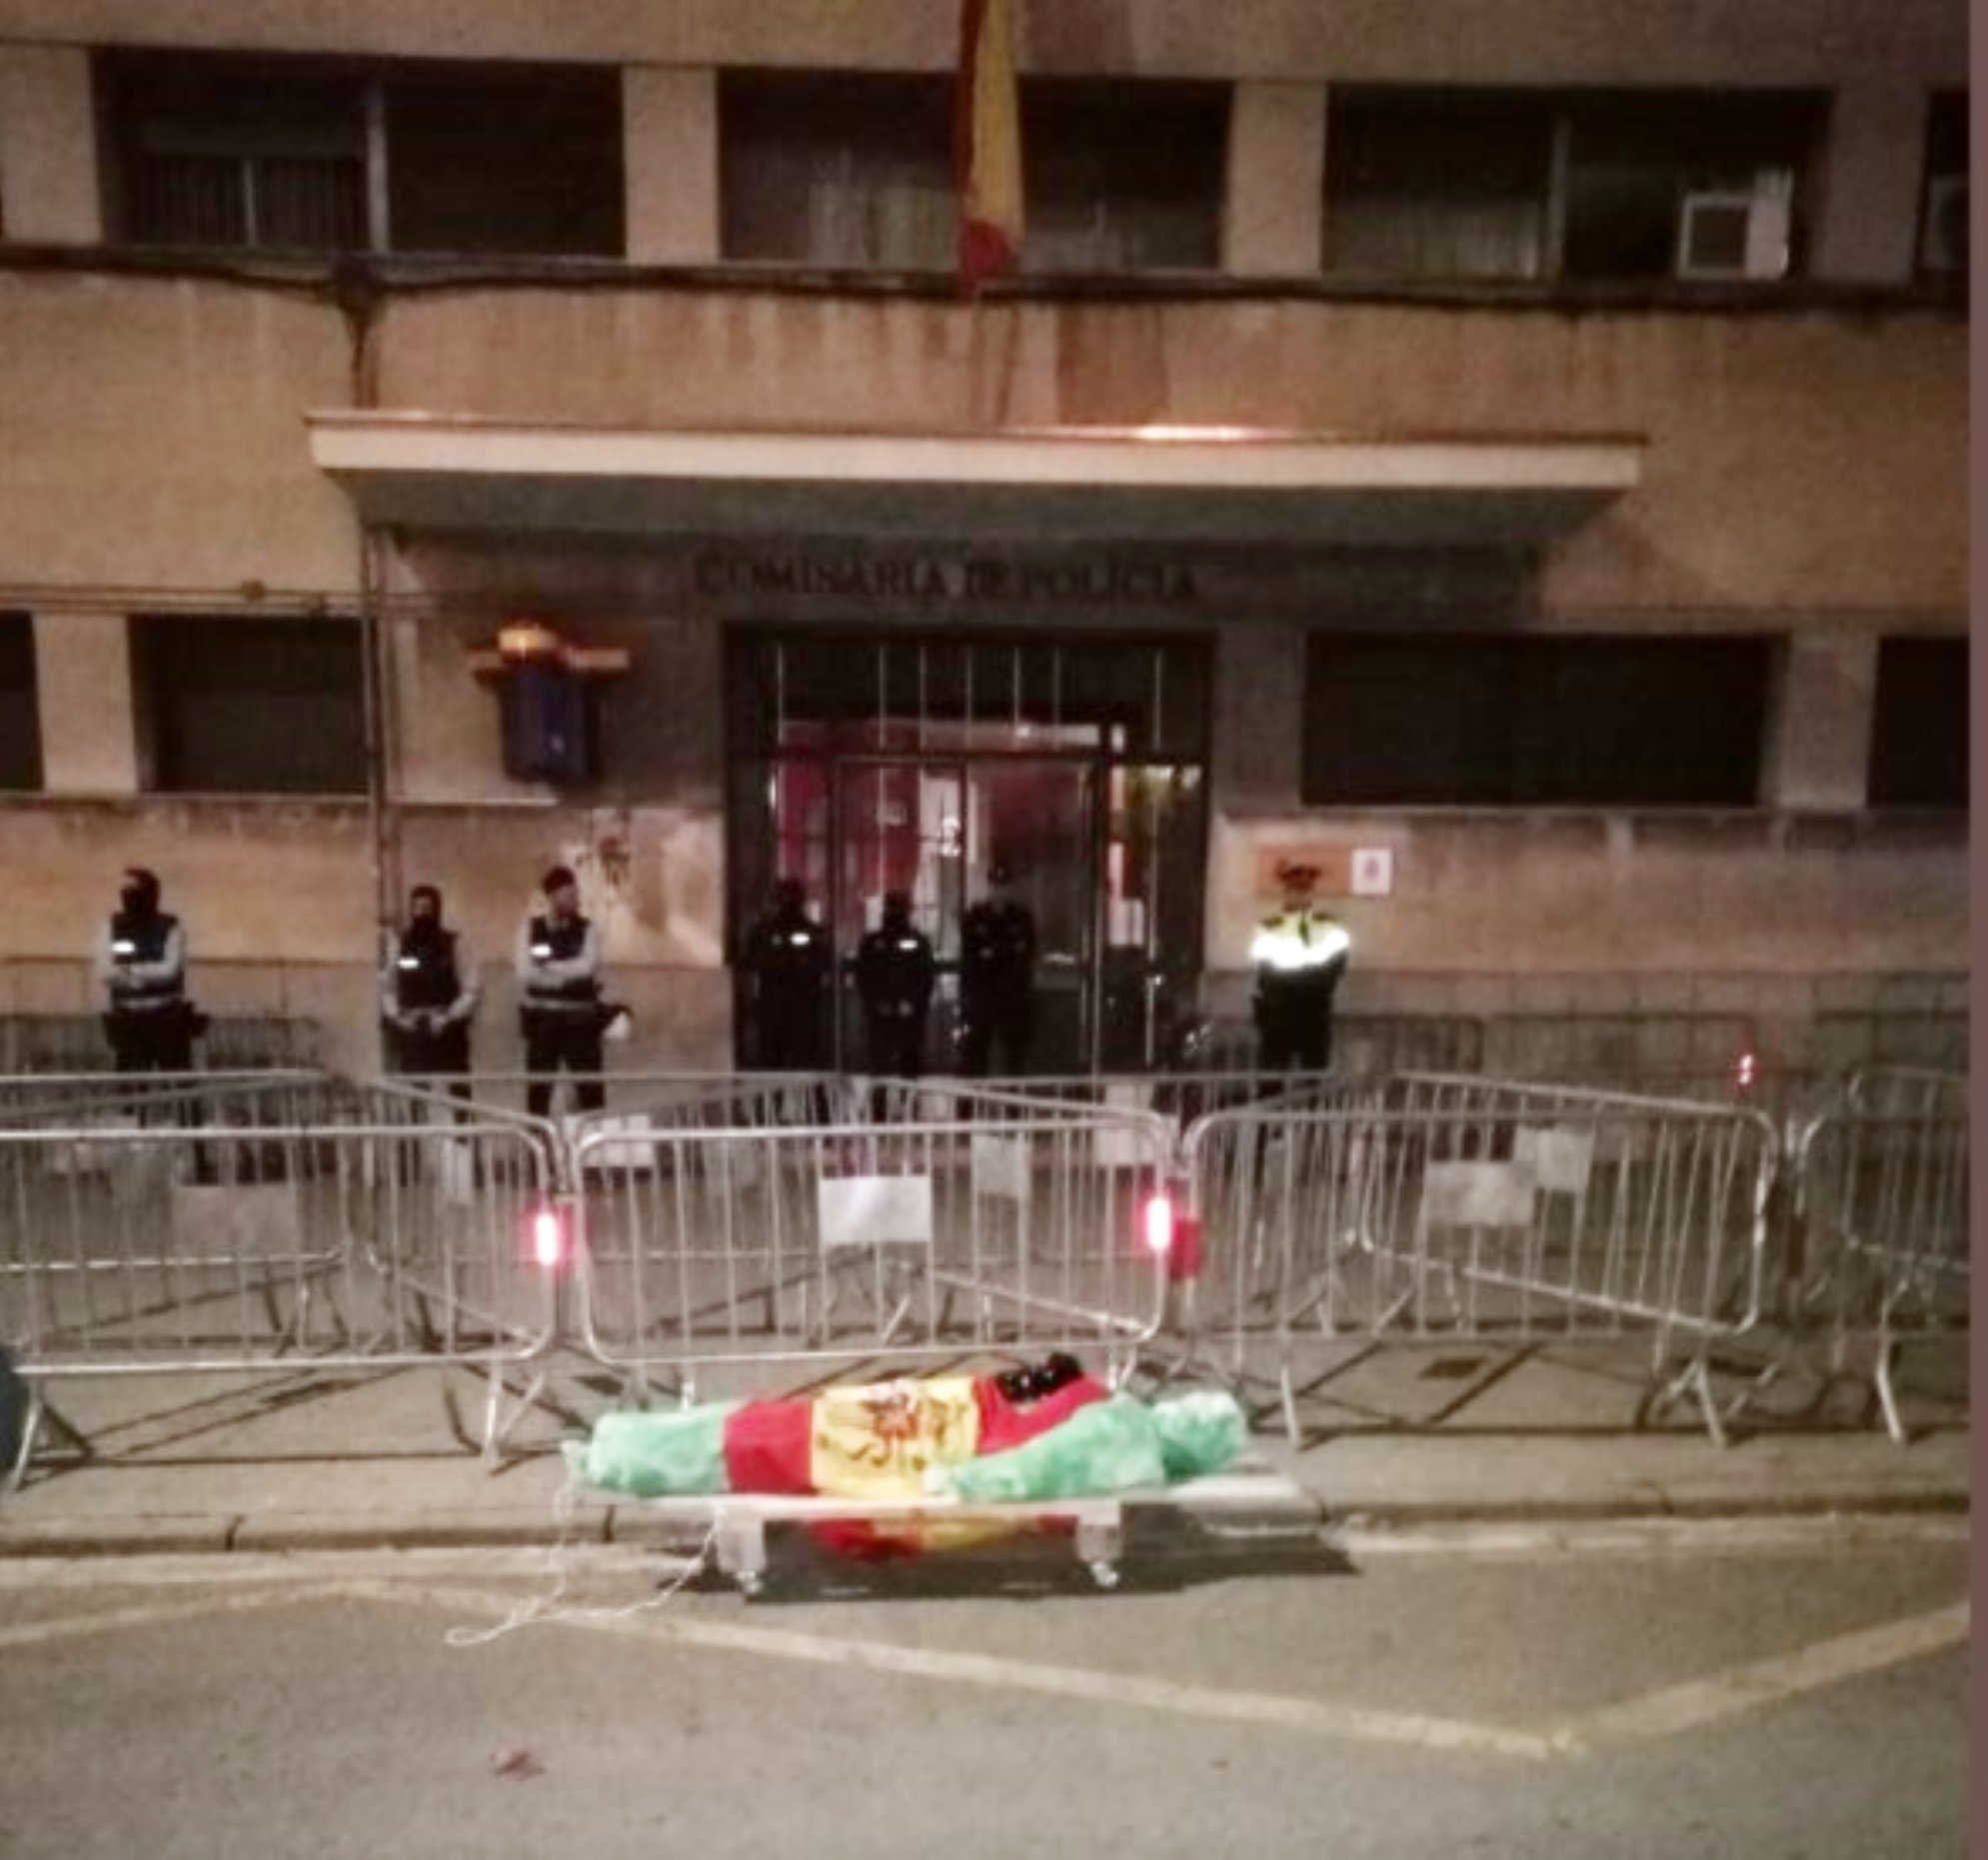 Els CDR simulen l'exhumació de Franco i li calen foc davant la comissaria de Sabadell